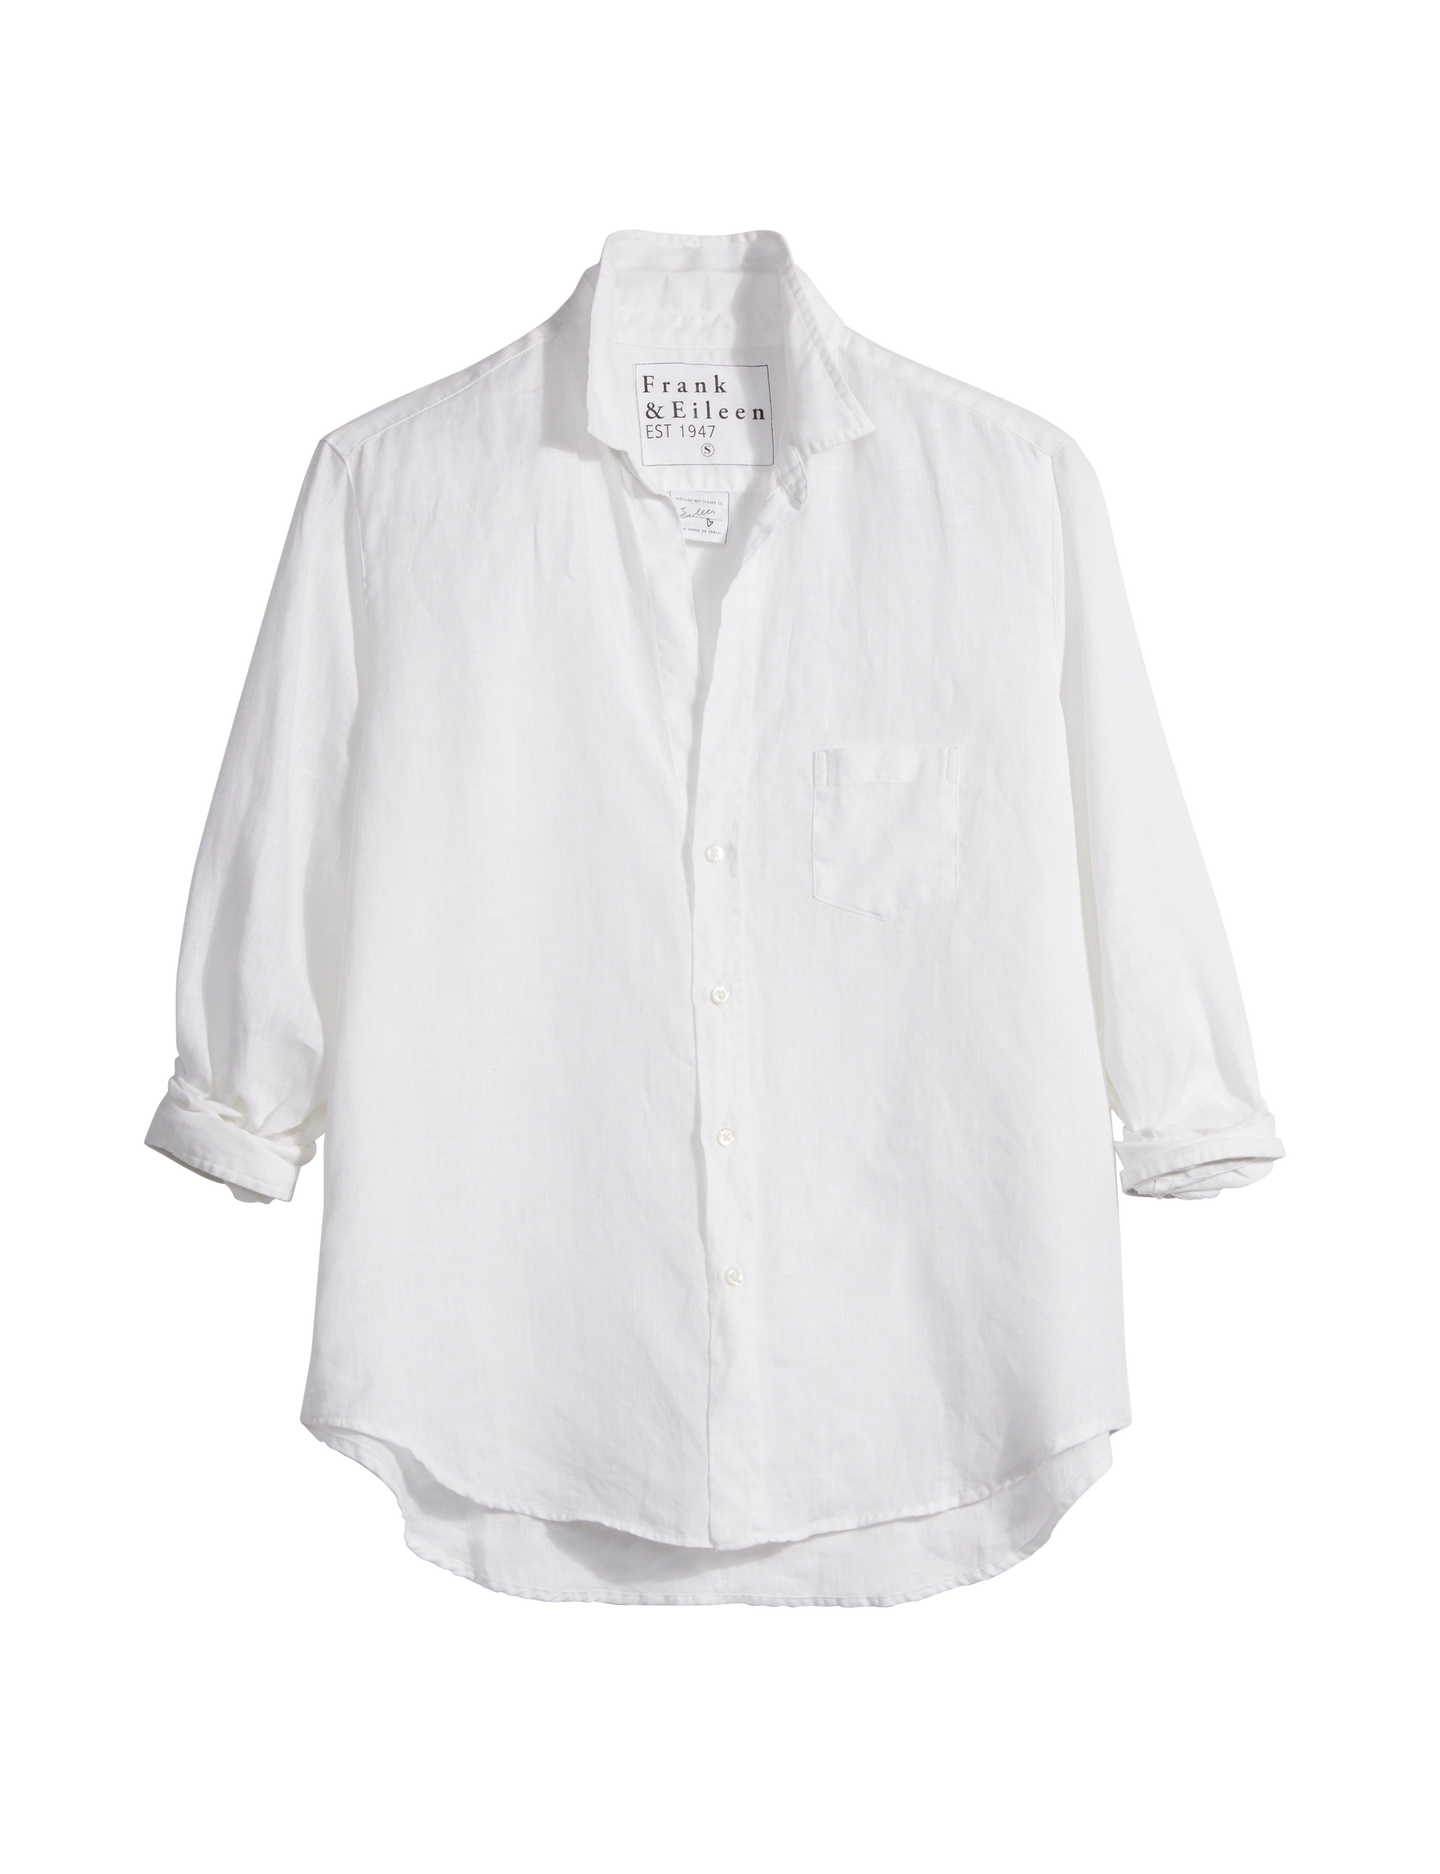 Eileen White Classic Linen Shirt Frank Eileen